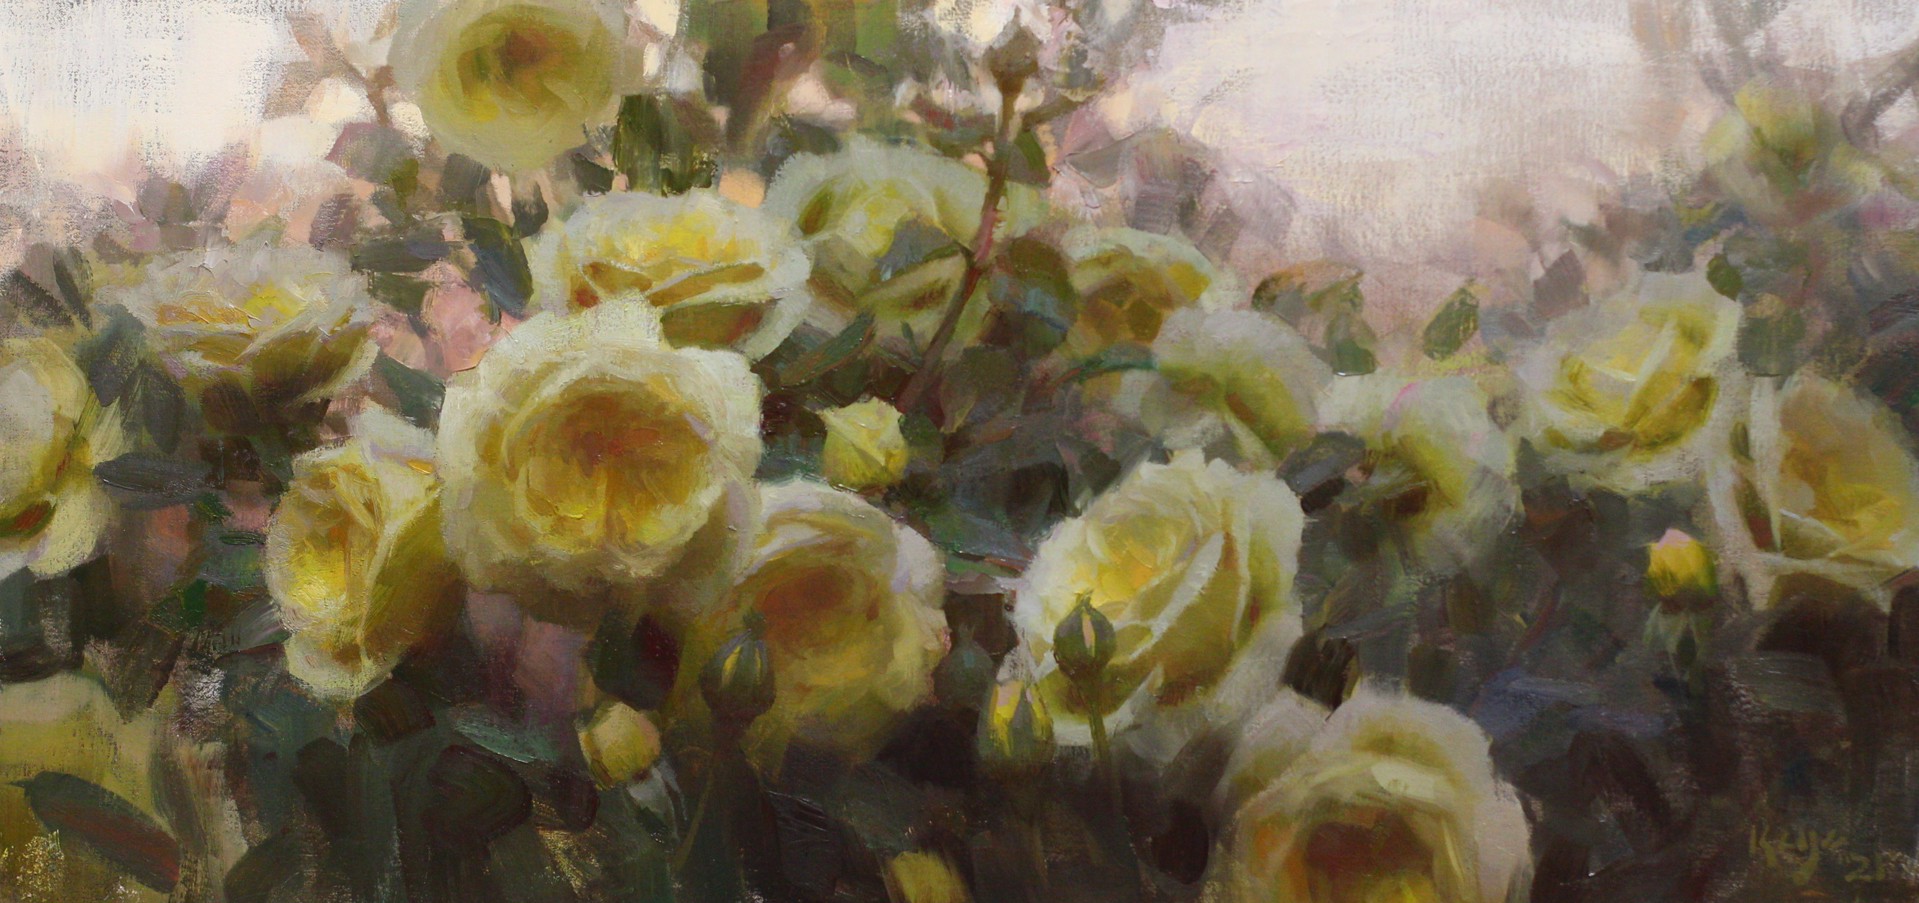 Golden Roses by Daniel Keys